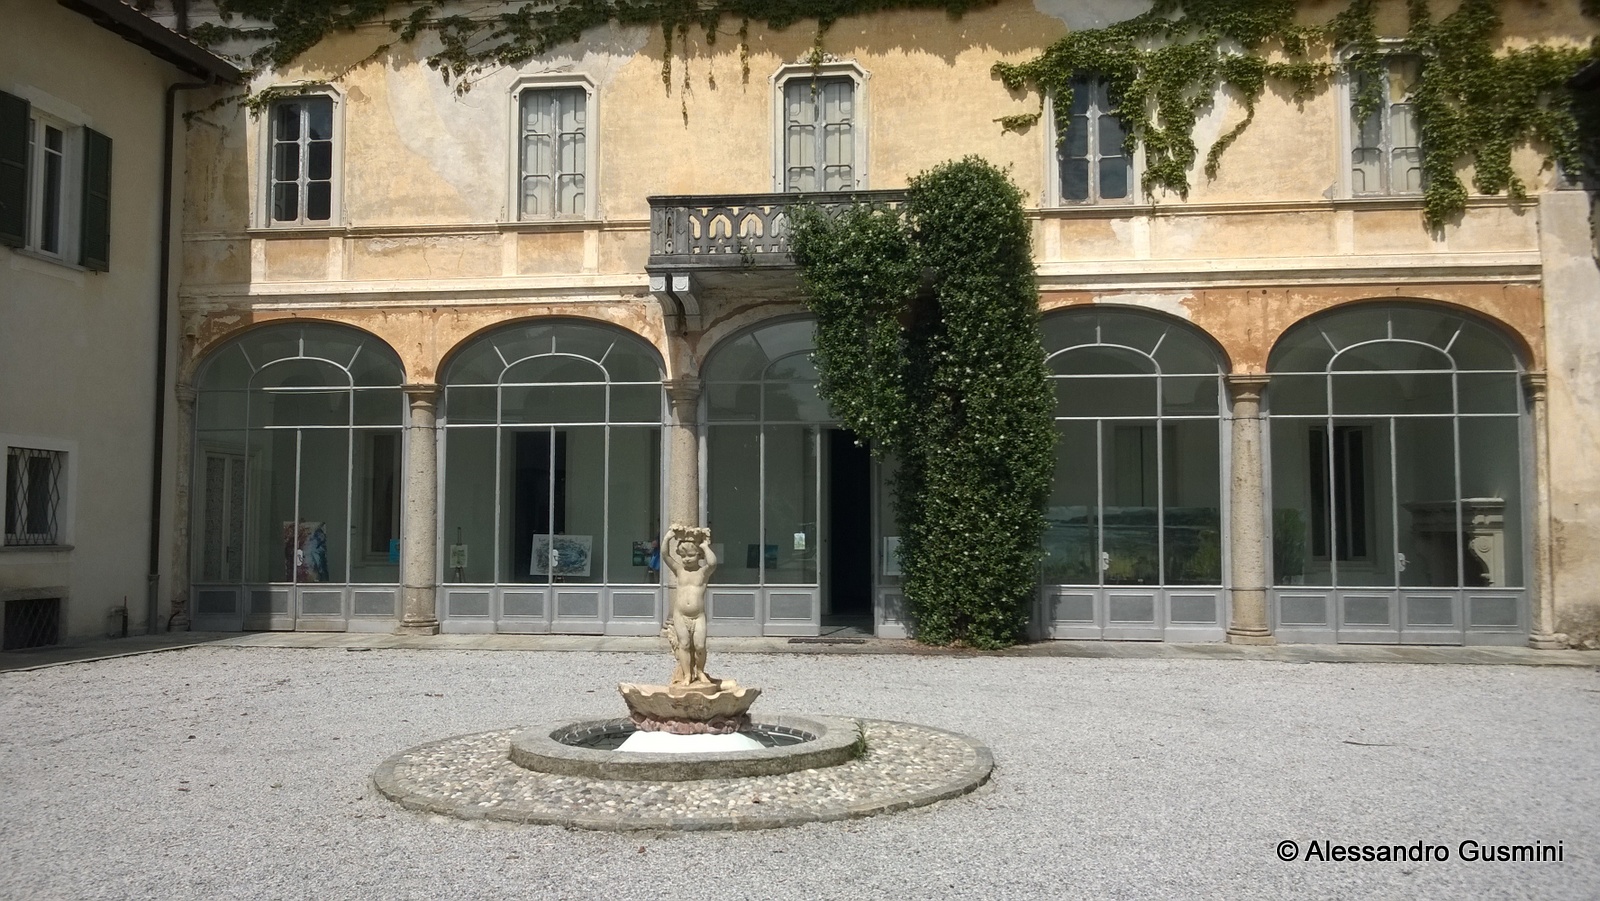 WiS 2014 - Mostra di pittura presso Villa Leonardi